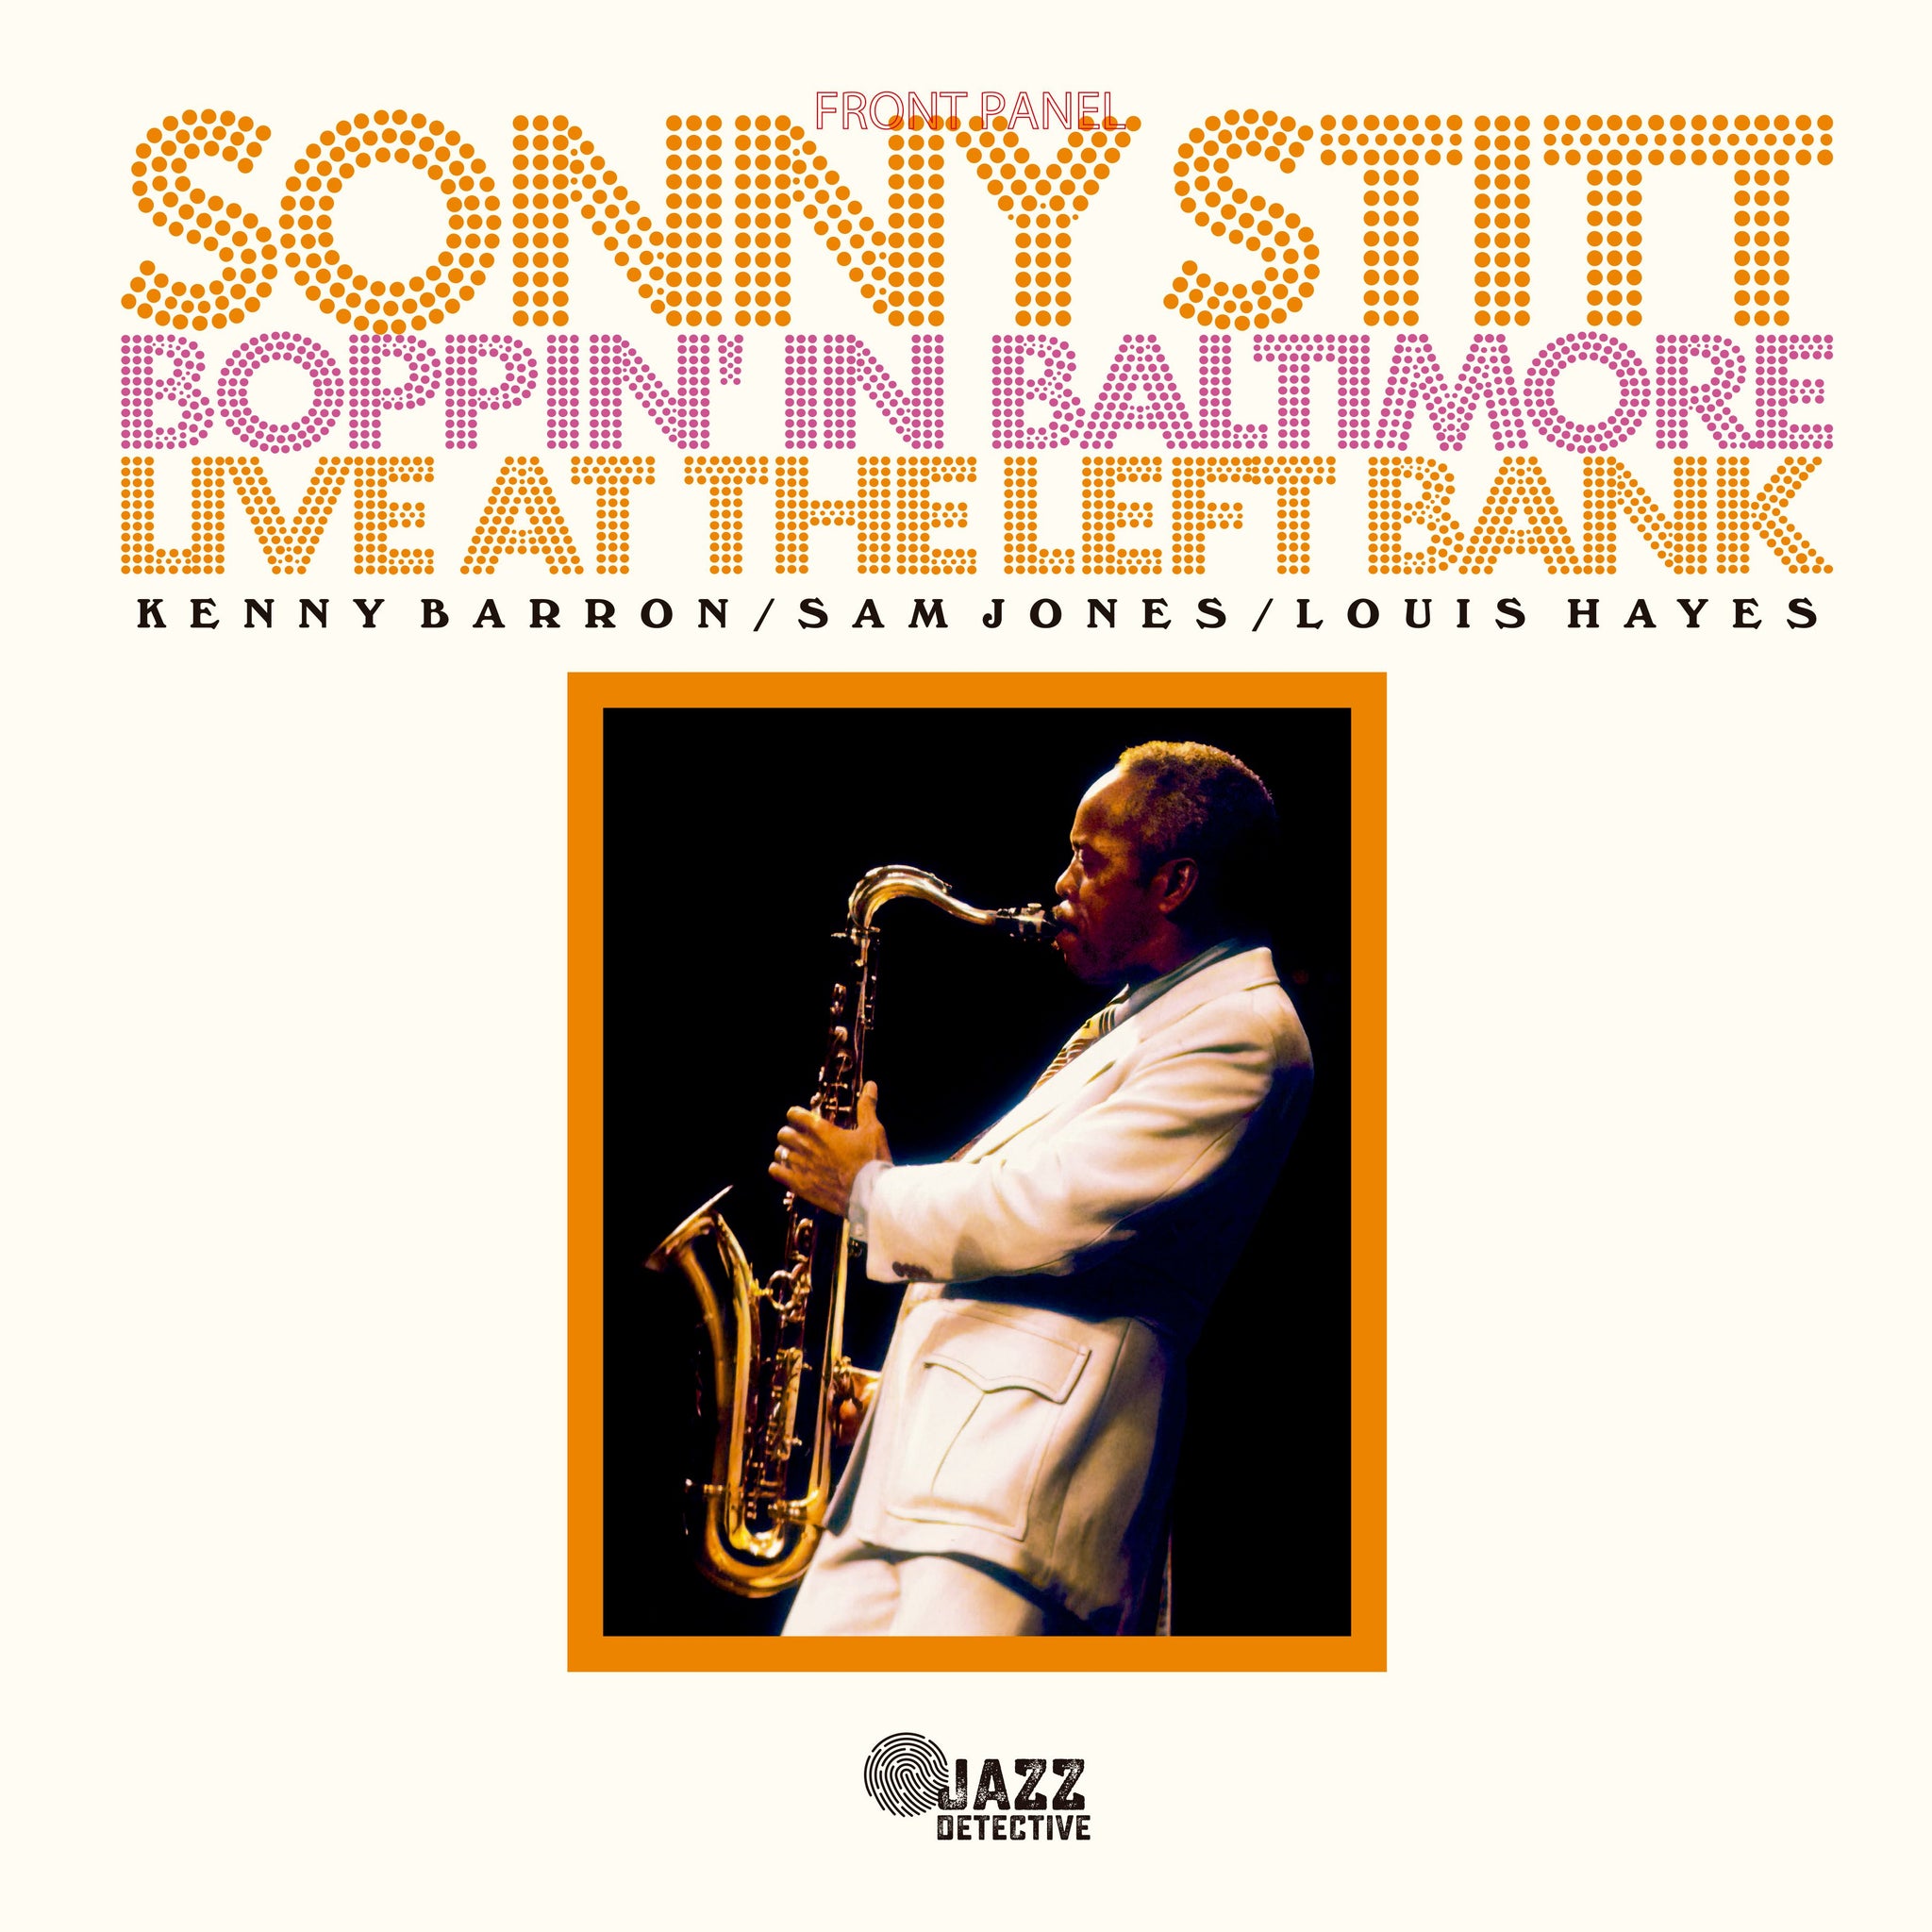 SONNY STITT - Boppin' in Baltimore: Live at the Left Bank - 2LP - Vinyl [RSD23]